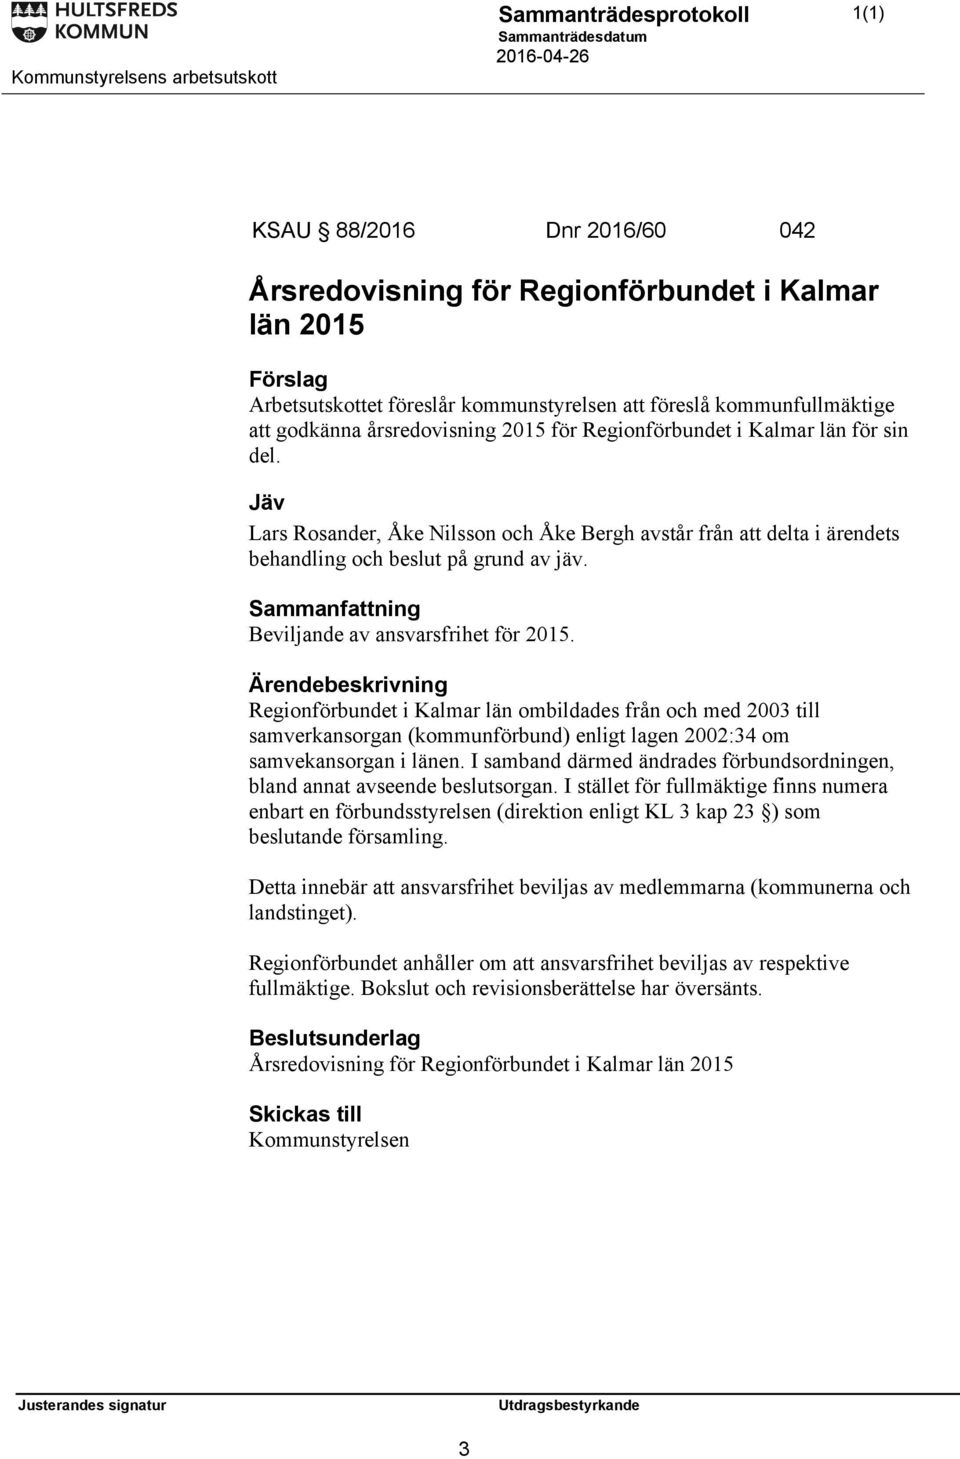 Sammanfattning Beviljande av ansvarsfrihet för 2015. Regionförbundet i Kalmar län ombildades från och med 2003 till samverkansorgan (kommunförbund) enligt lagen 2002:34 om samvekansorgan i länen.